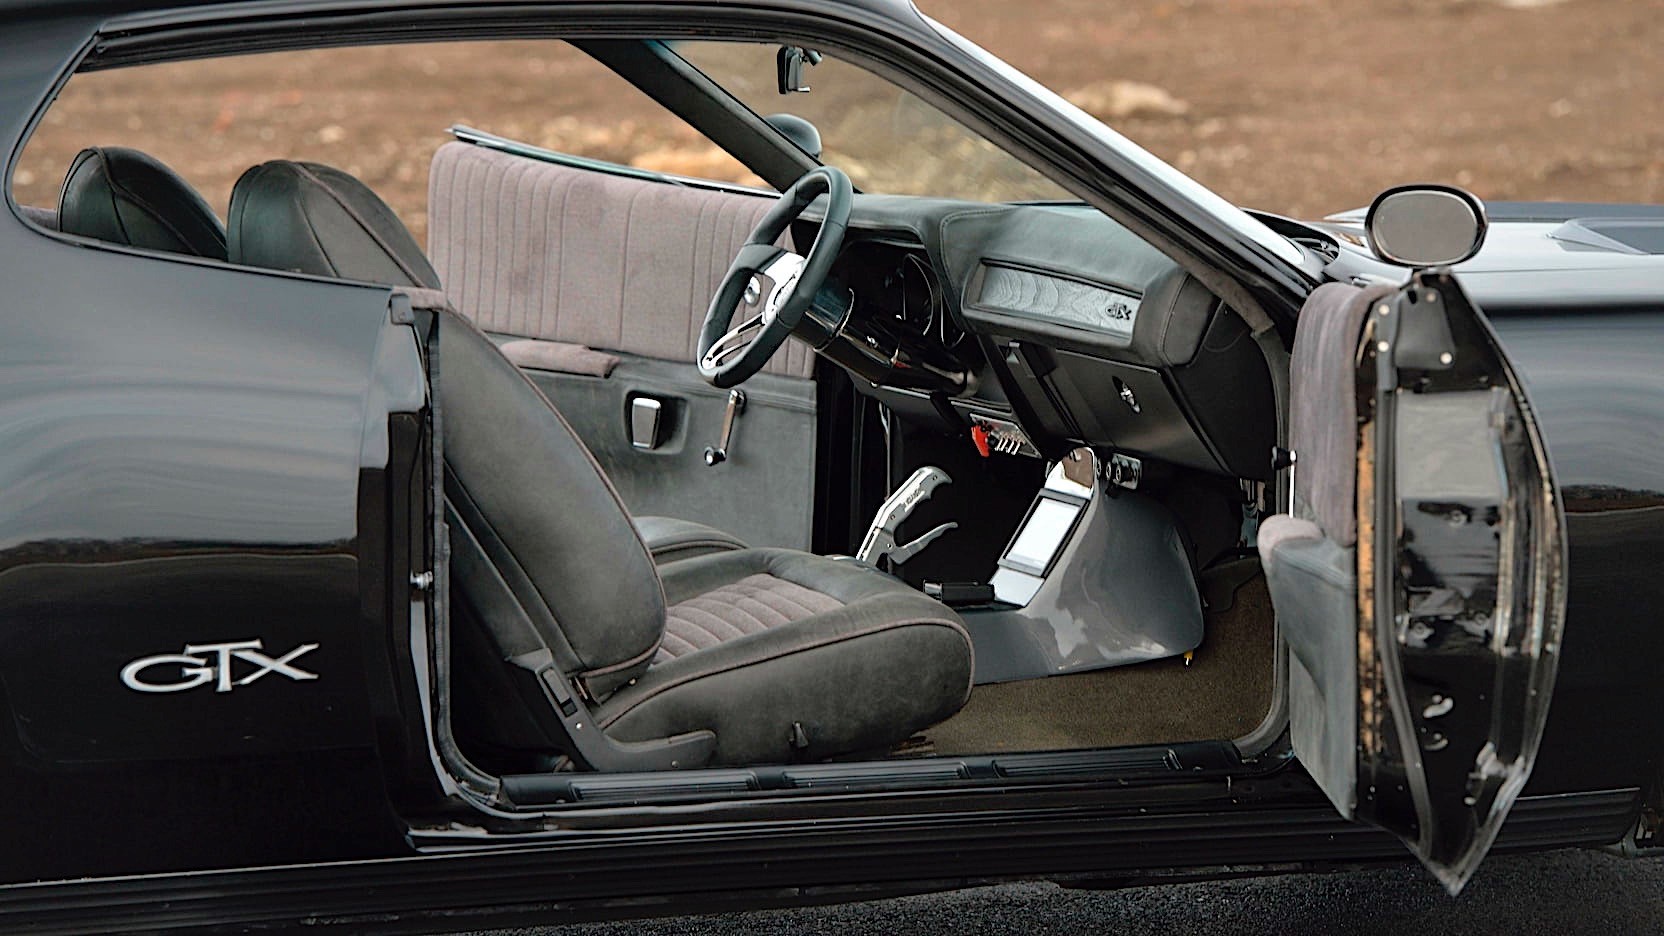 Coche GTX Fast & Furious F8 de Dom's Plymouth de la película The Fate of  the Furious por Jada 98300